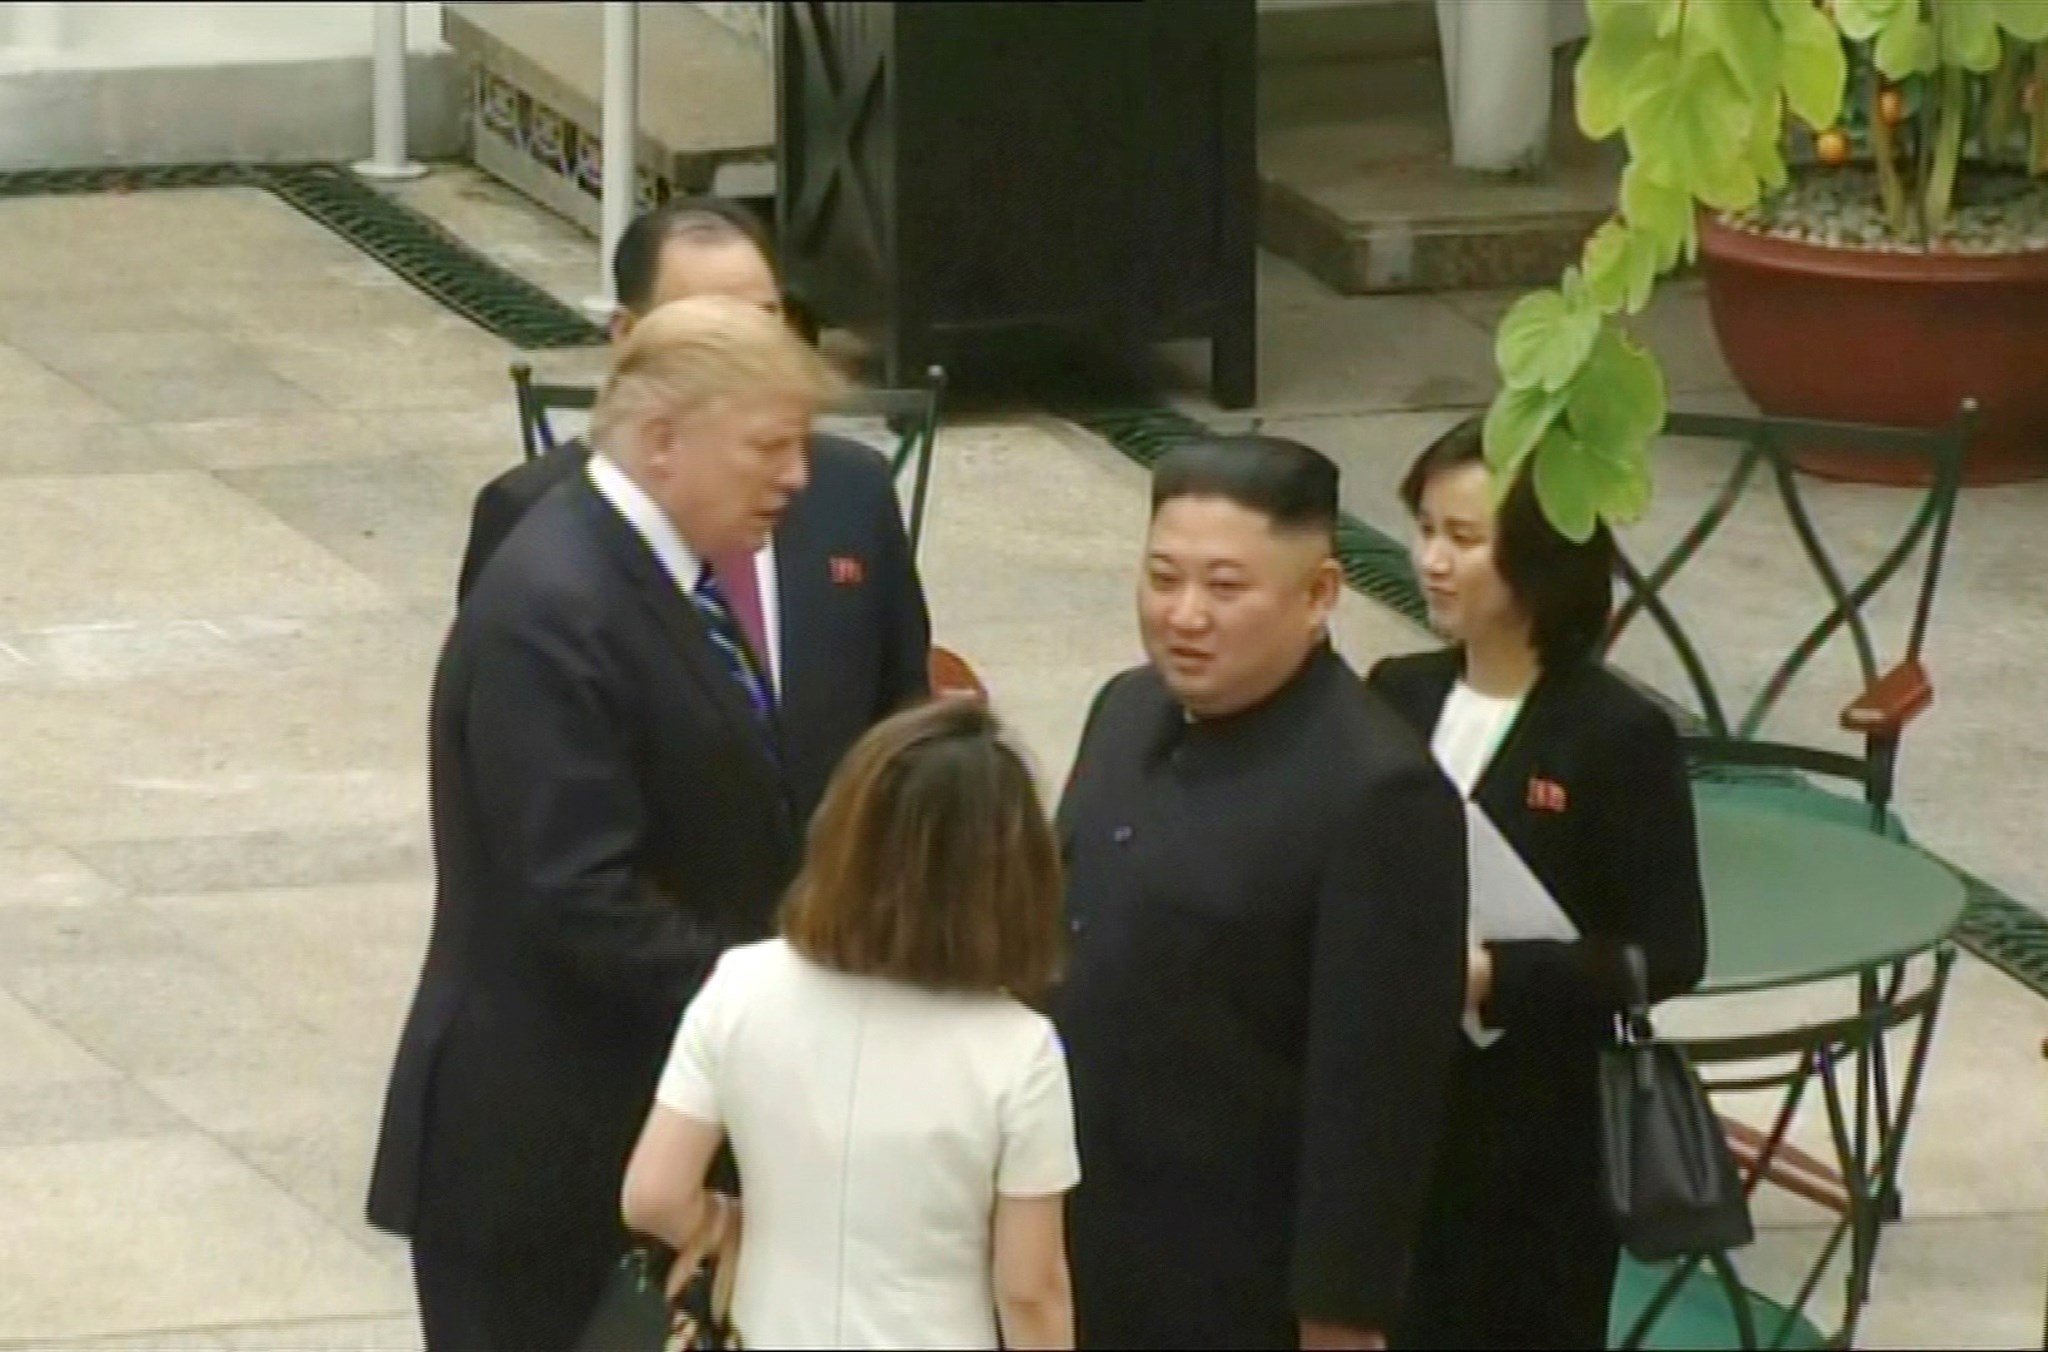 Acaba abruptament i sense acord la cimera entre Trump i Kim